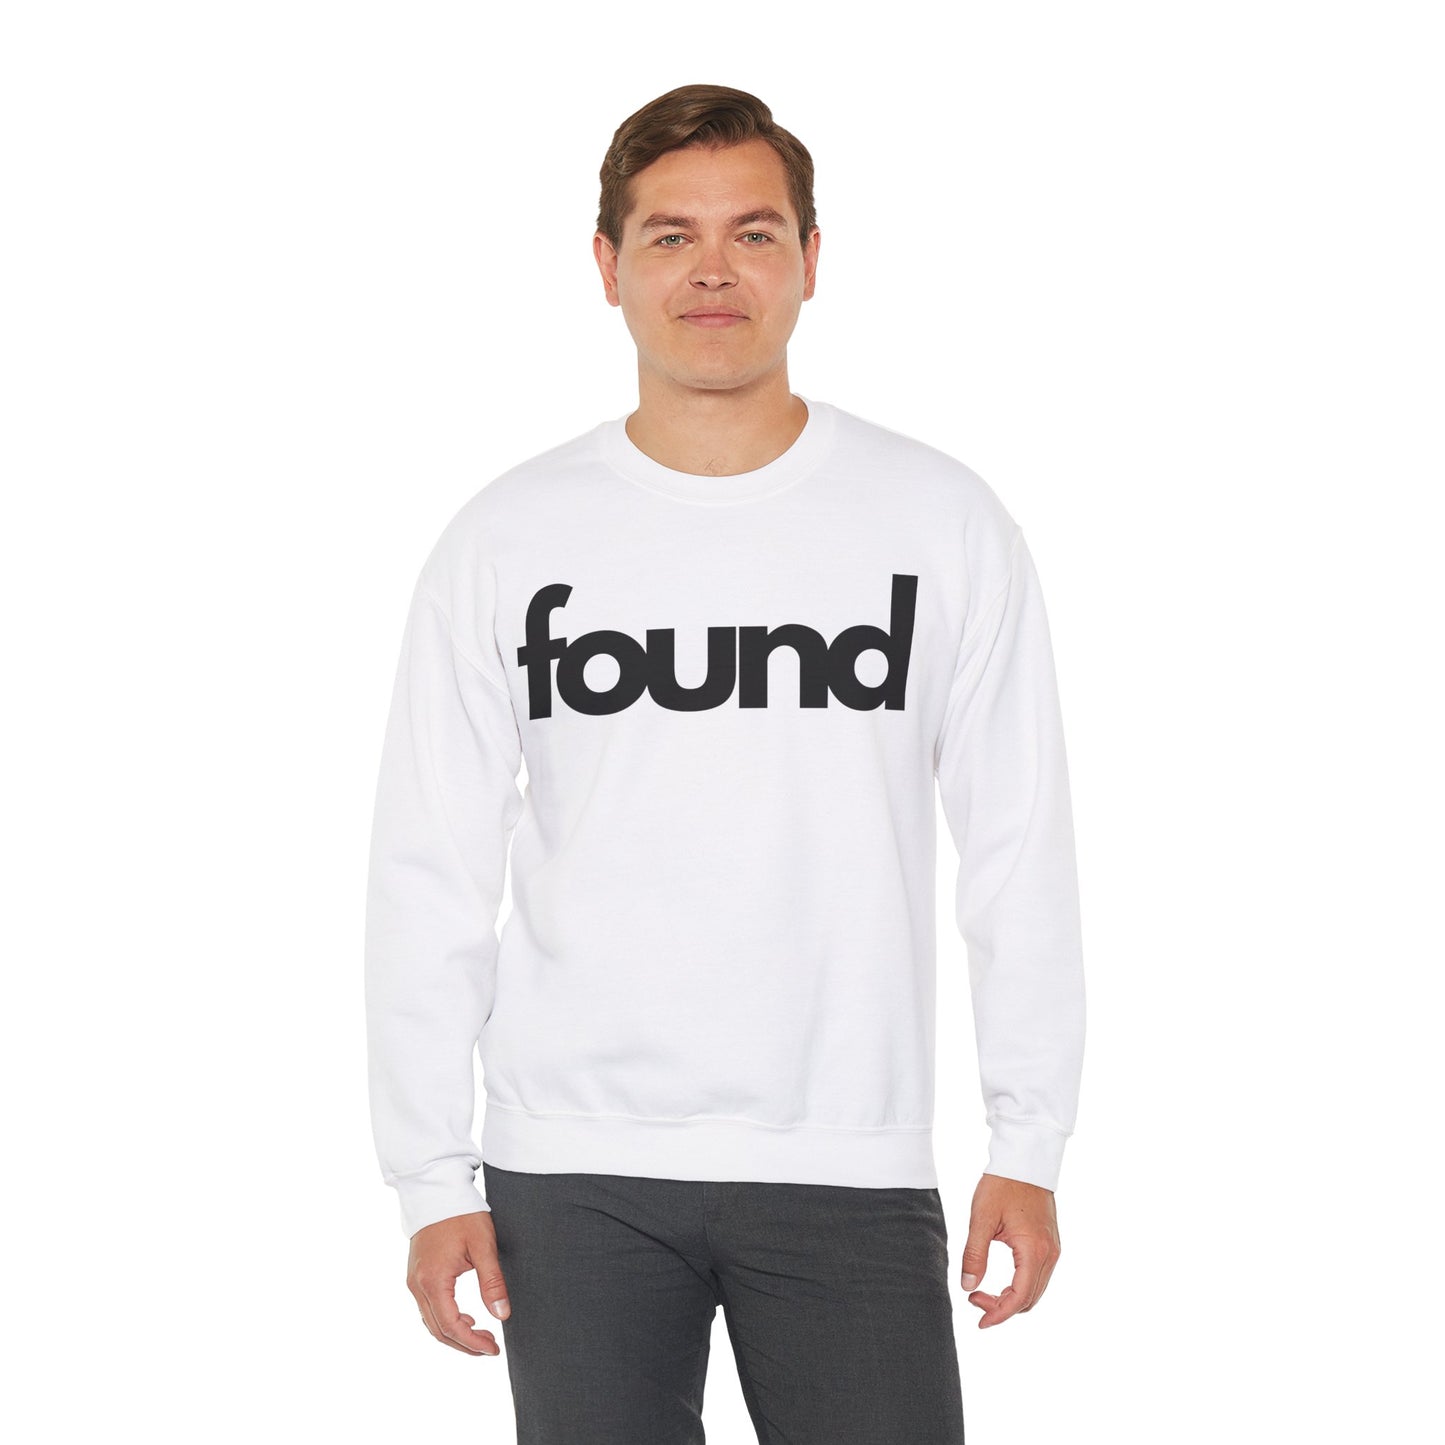 Found Sweatshirt